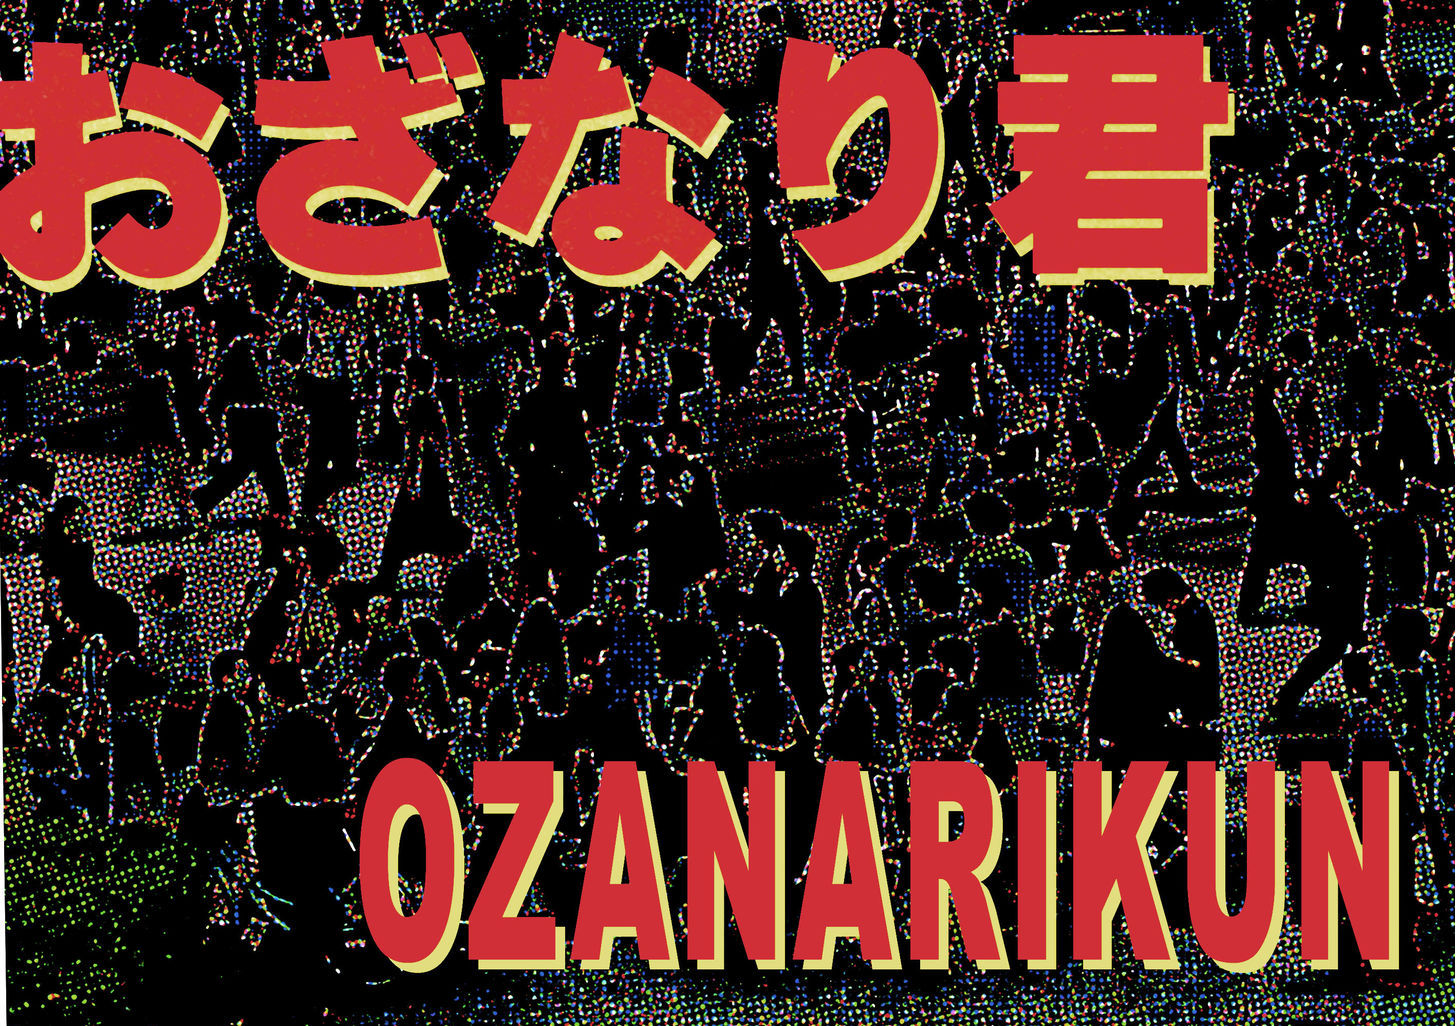 Ozanari-Kun 30